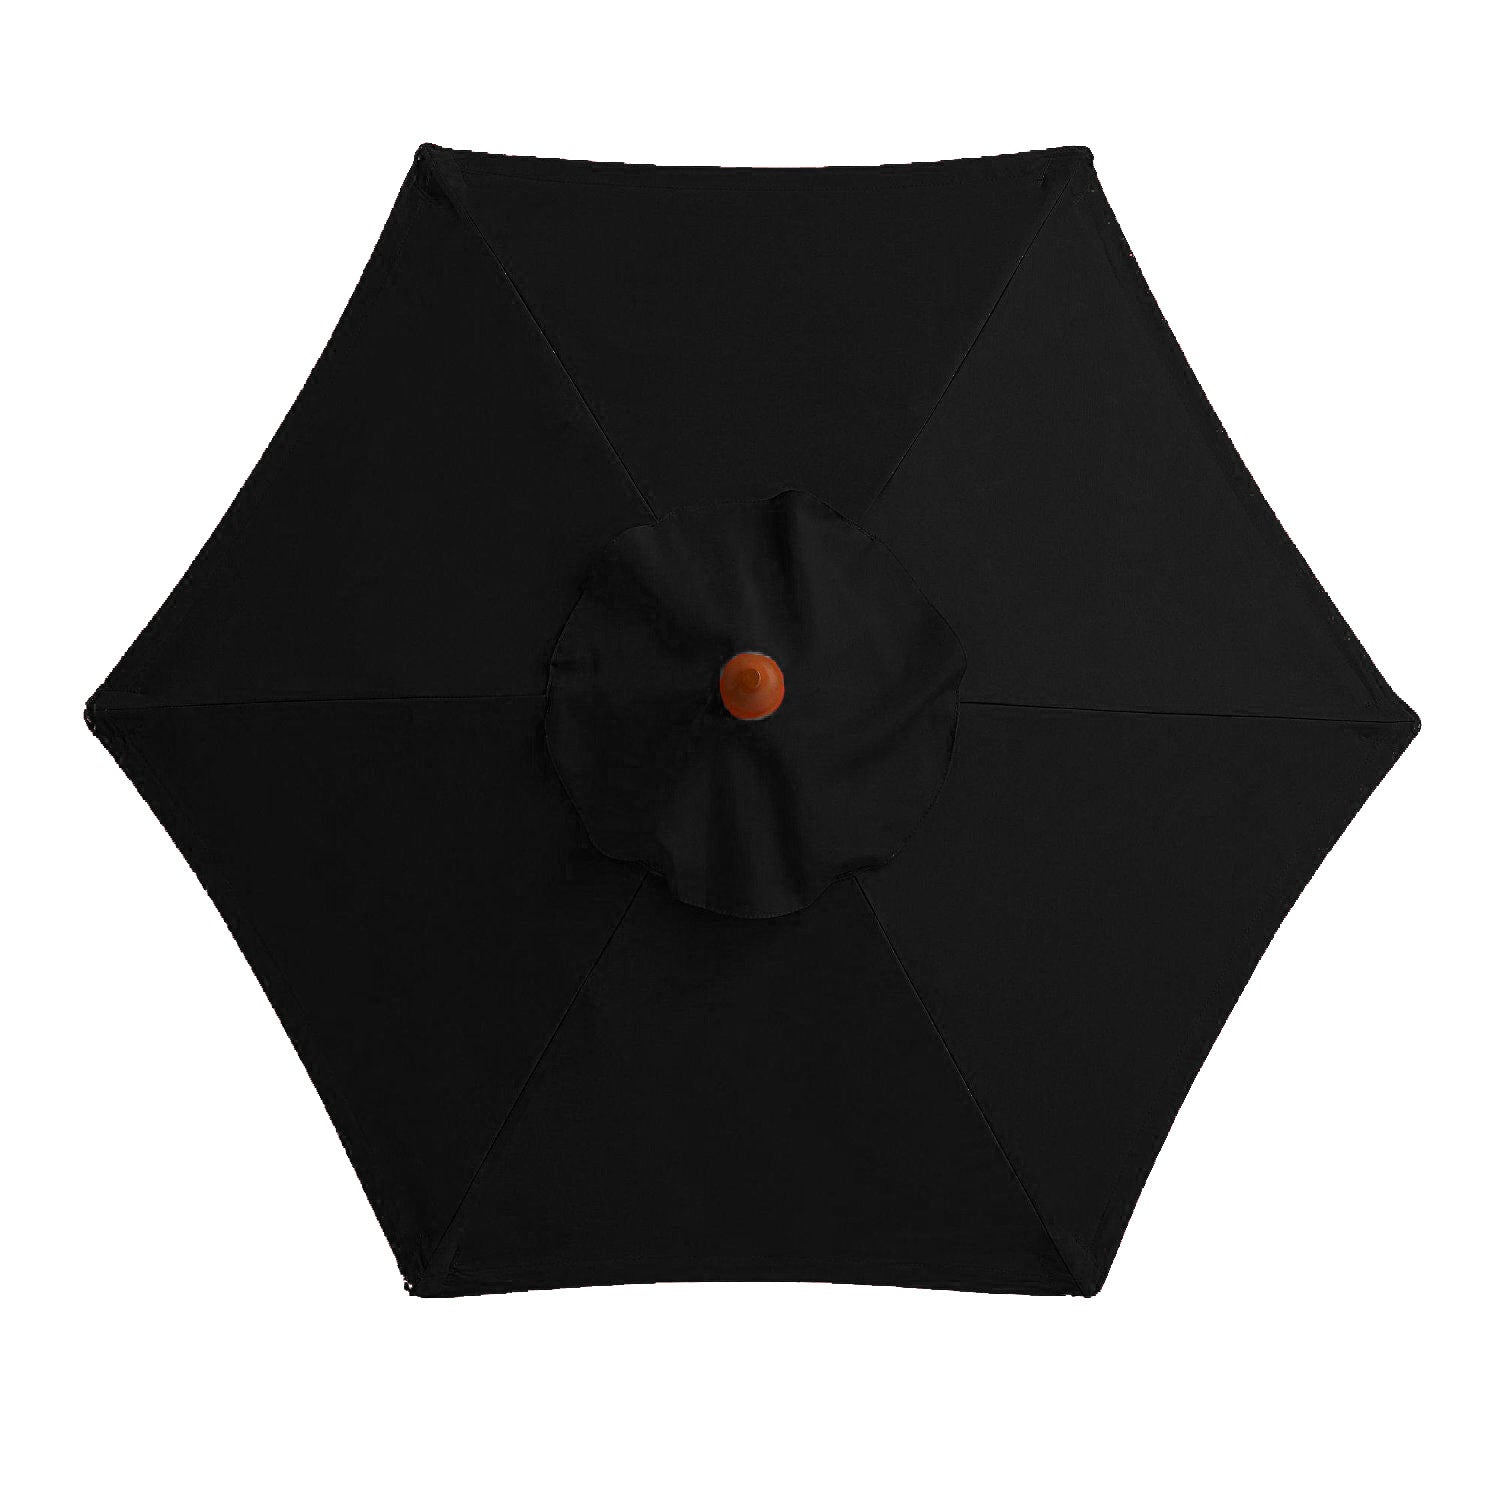 Outdoor Umbrella, Outdoor Rainproof Umbrella, Sun Umbrella, Umbrella Cover